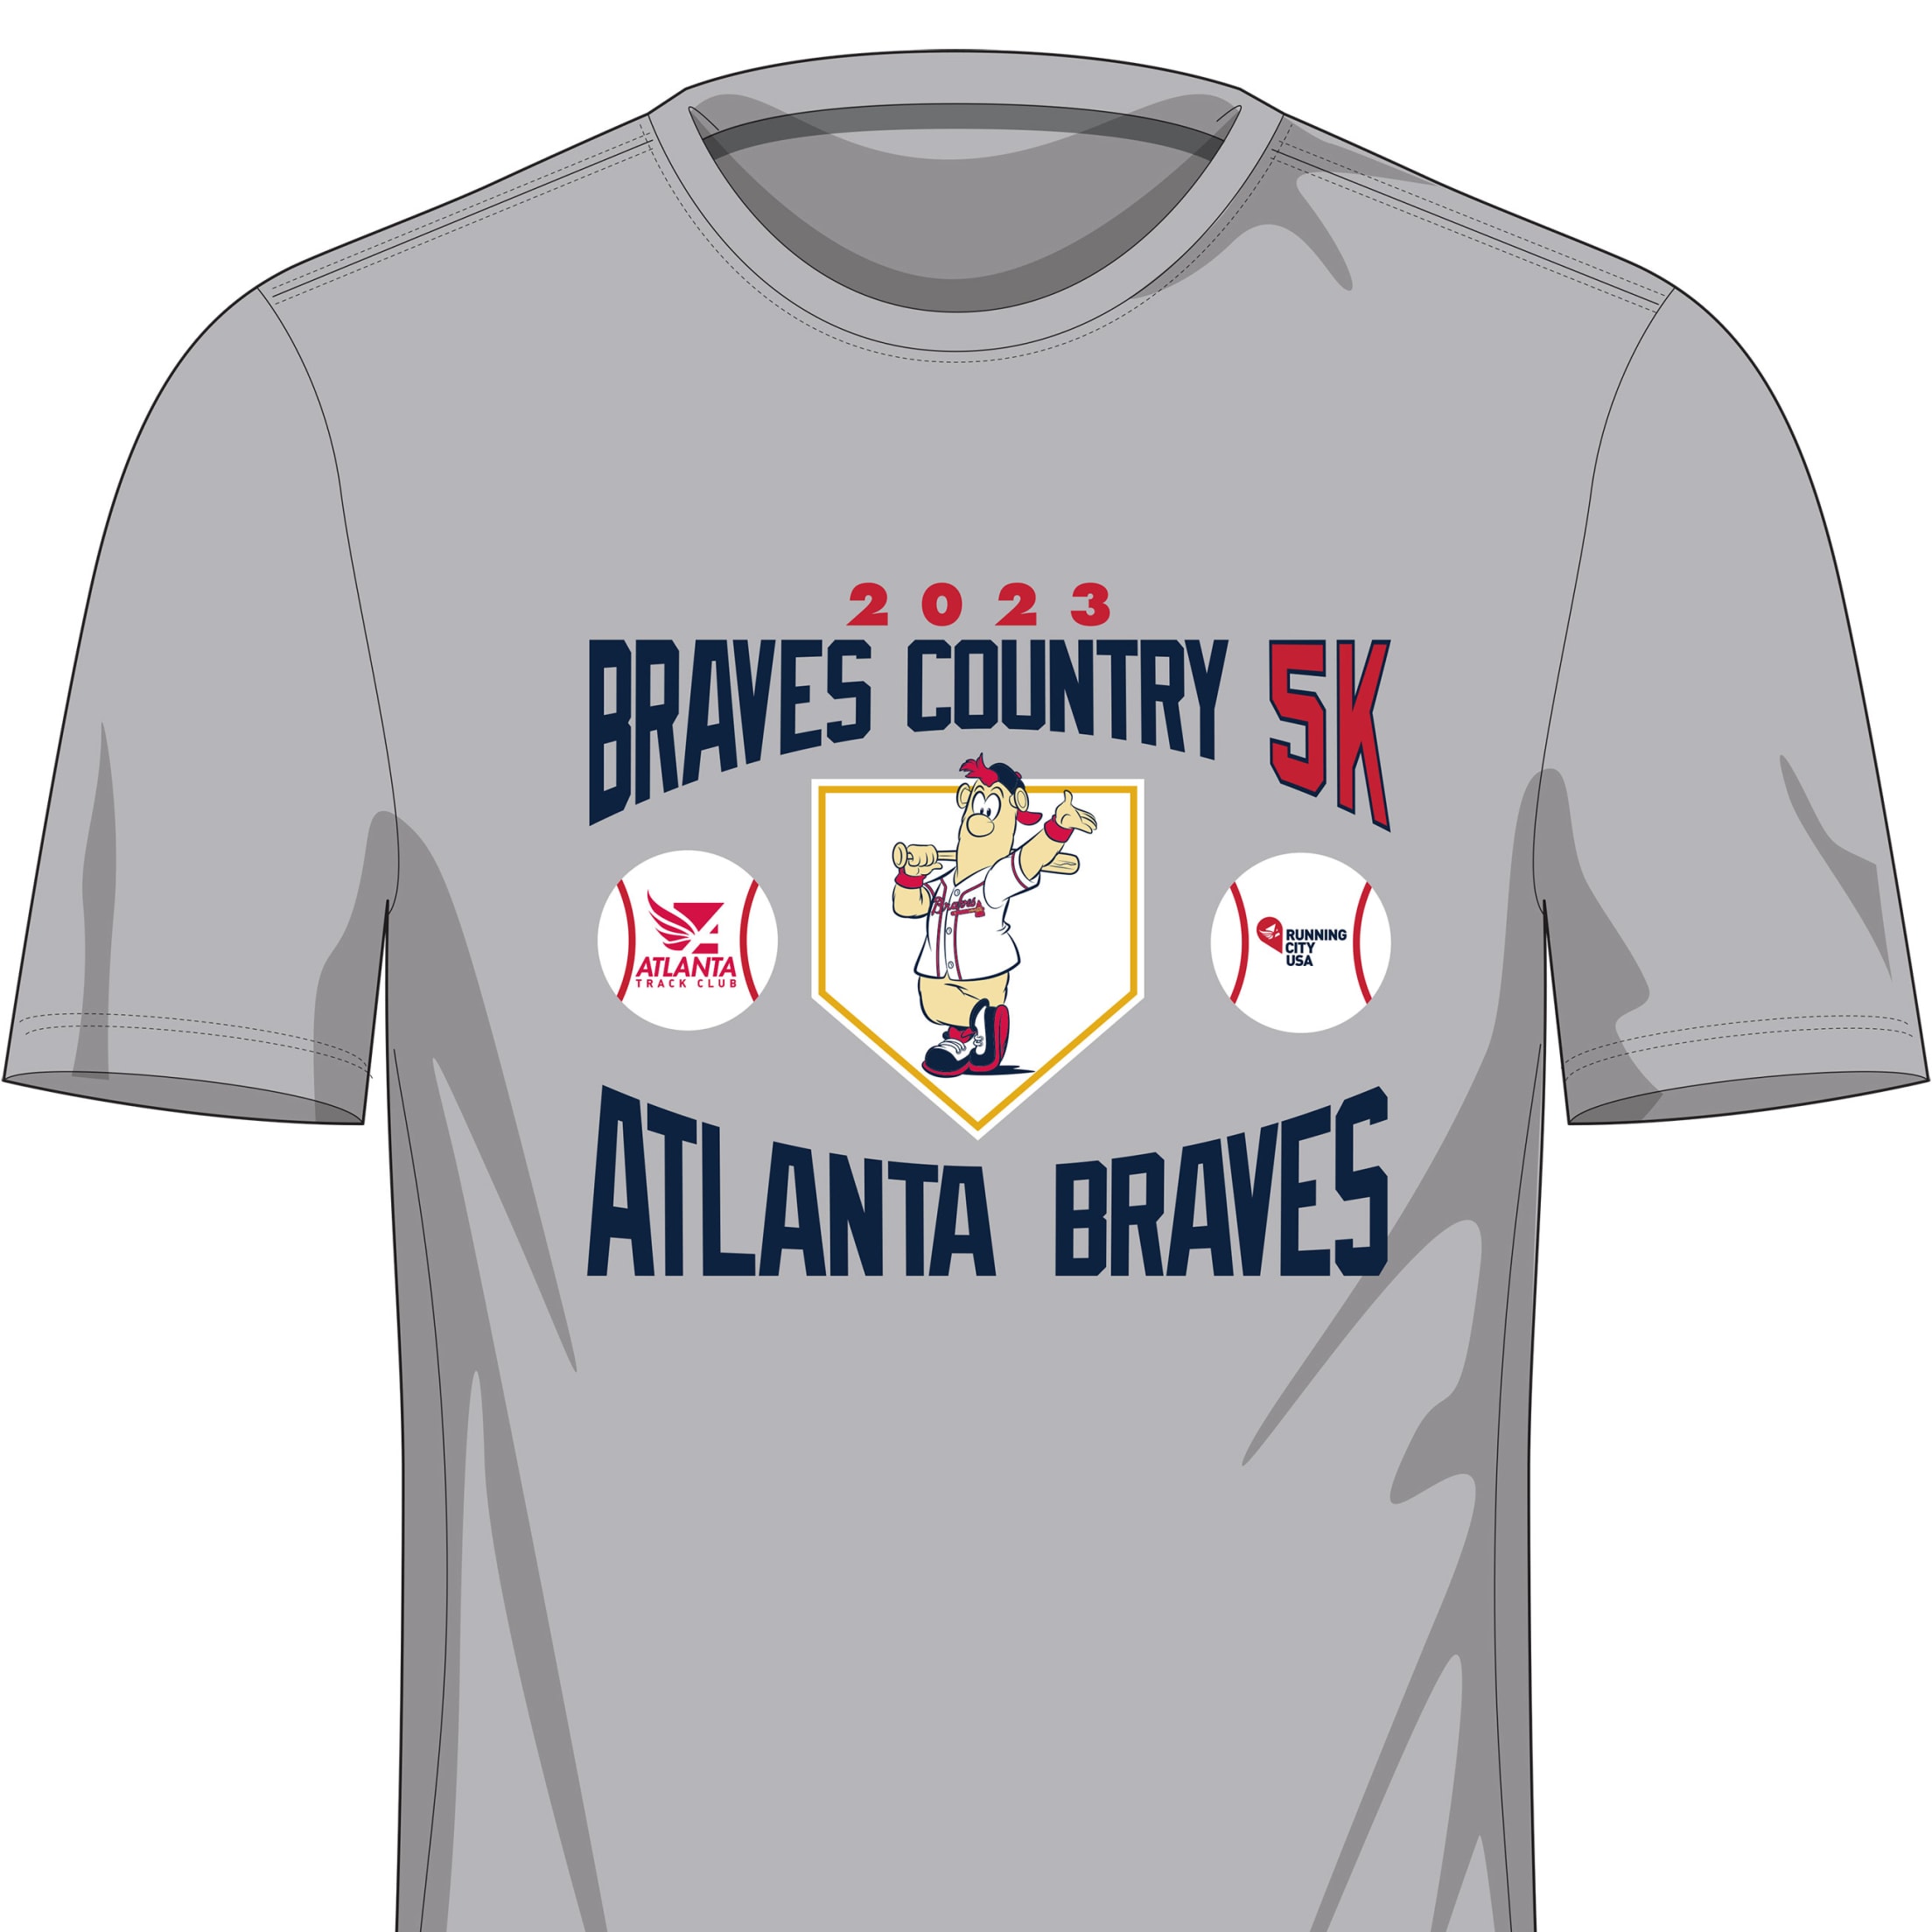 Braves Country 5K Atlanta Braves